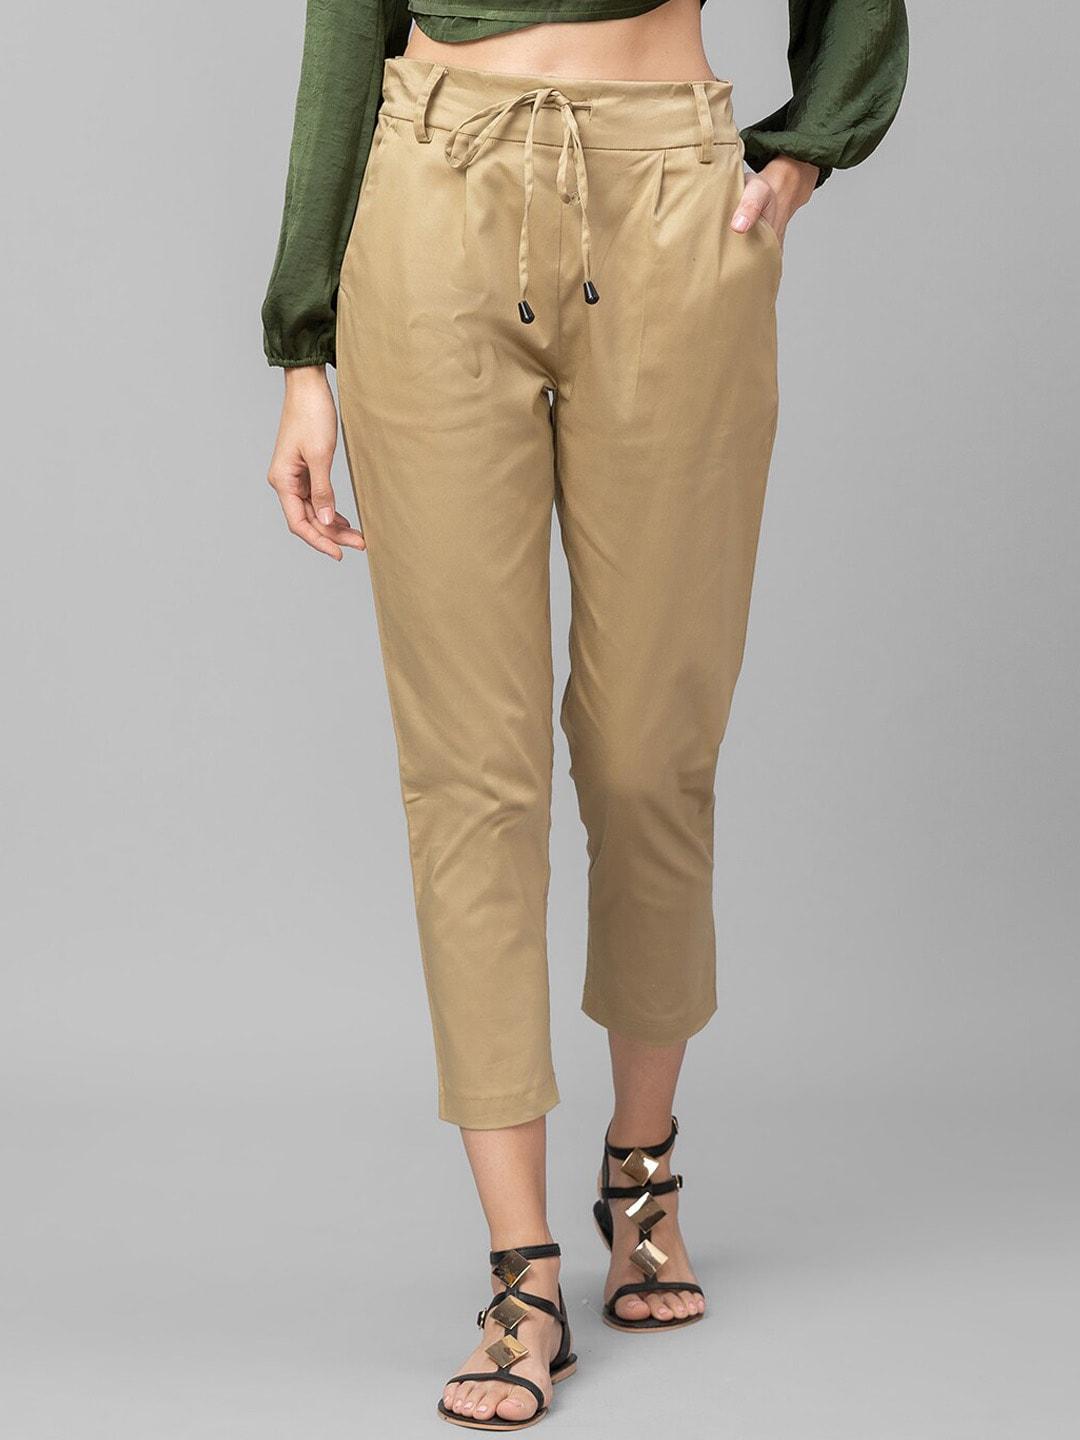 globus-women-beige-trousers